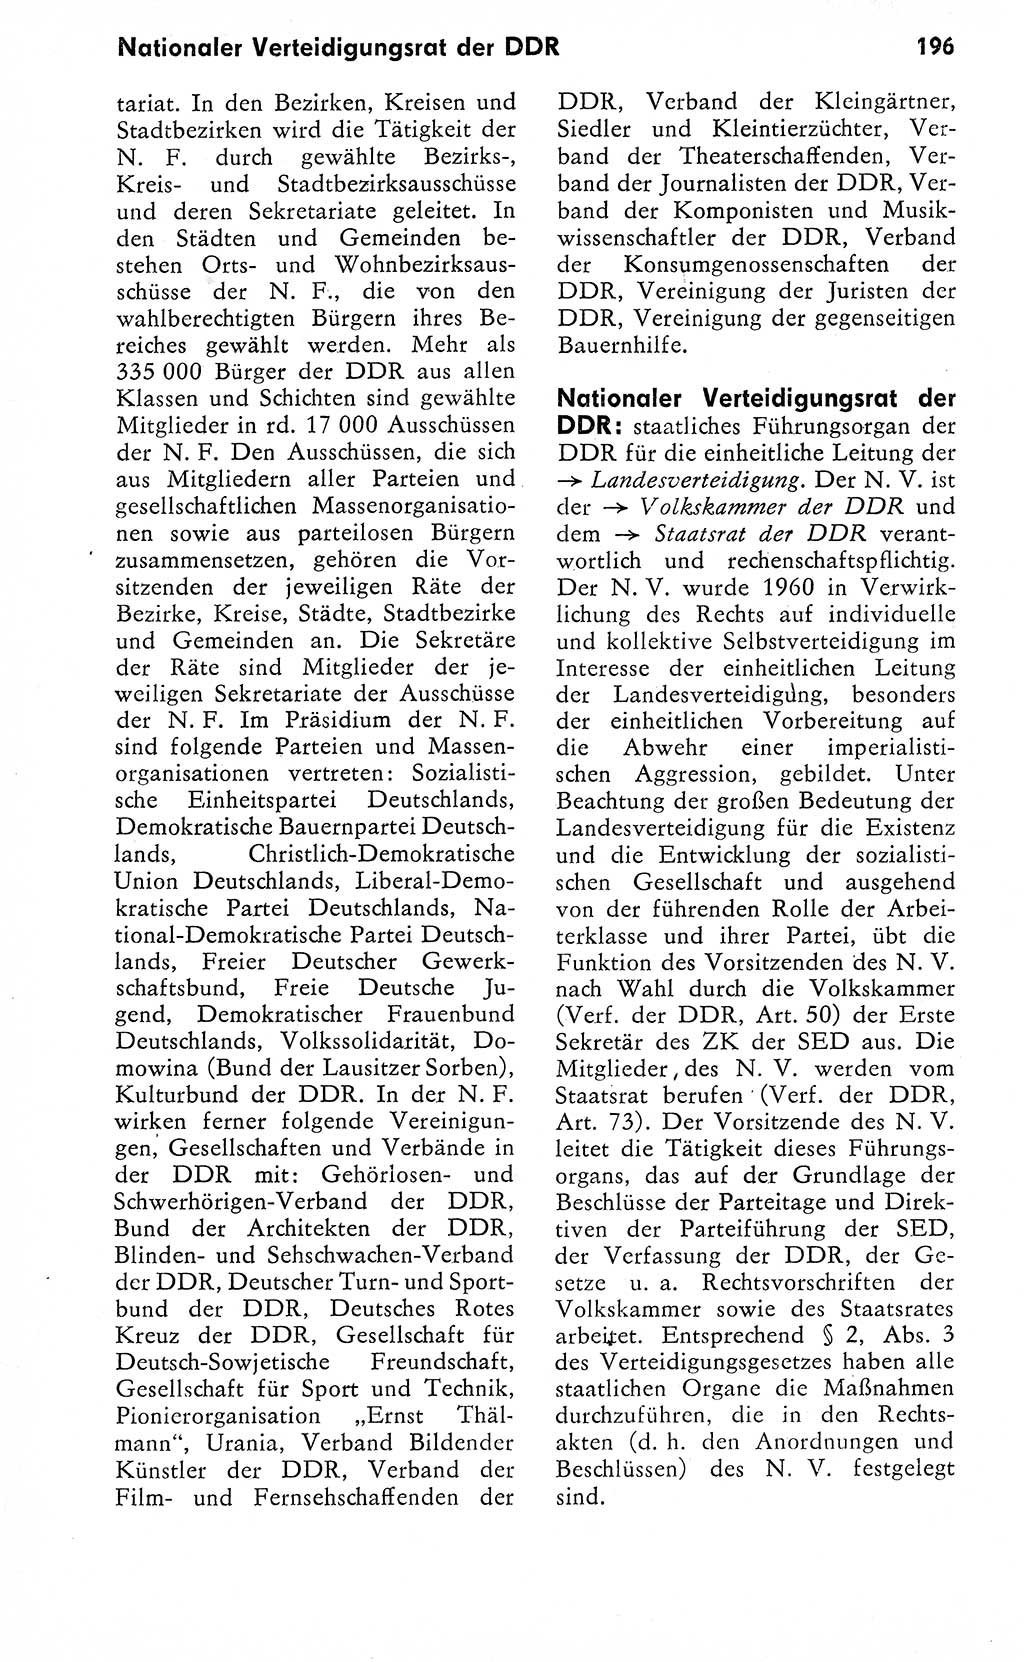 Wörterbuch zum sozialistischen Staat [Deutsche Demokratische Republik (DDR)] 1974, Seite 196 (Wb. soz. St. DDR 1974, S. 196)